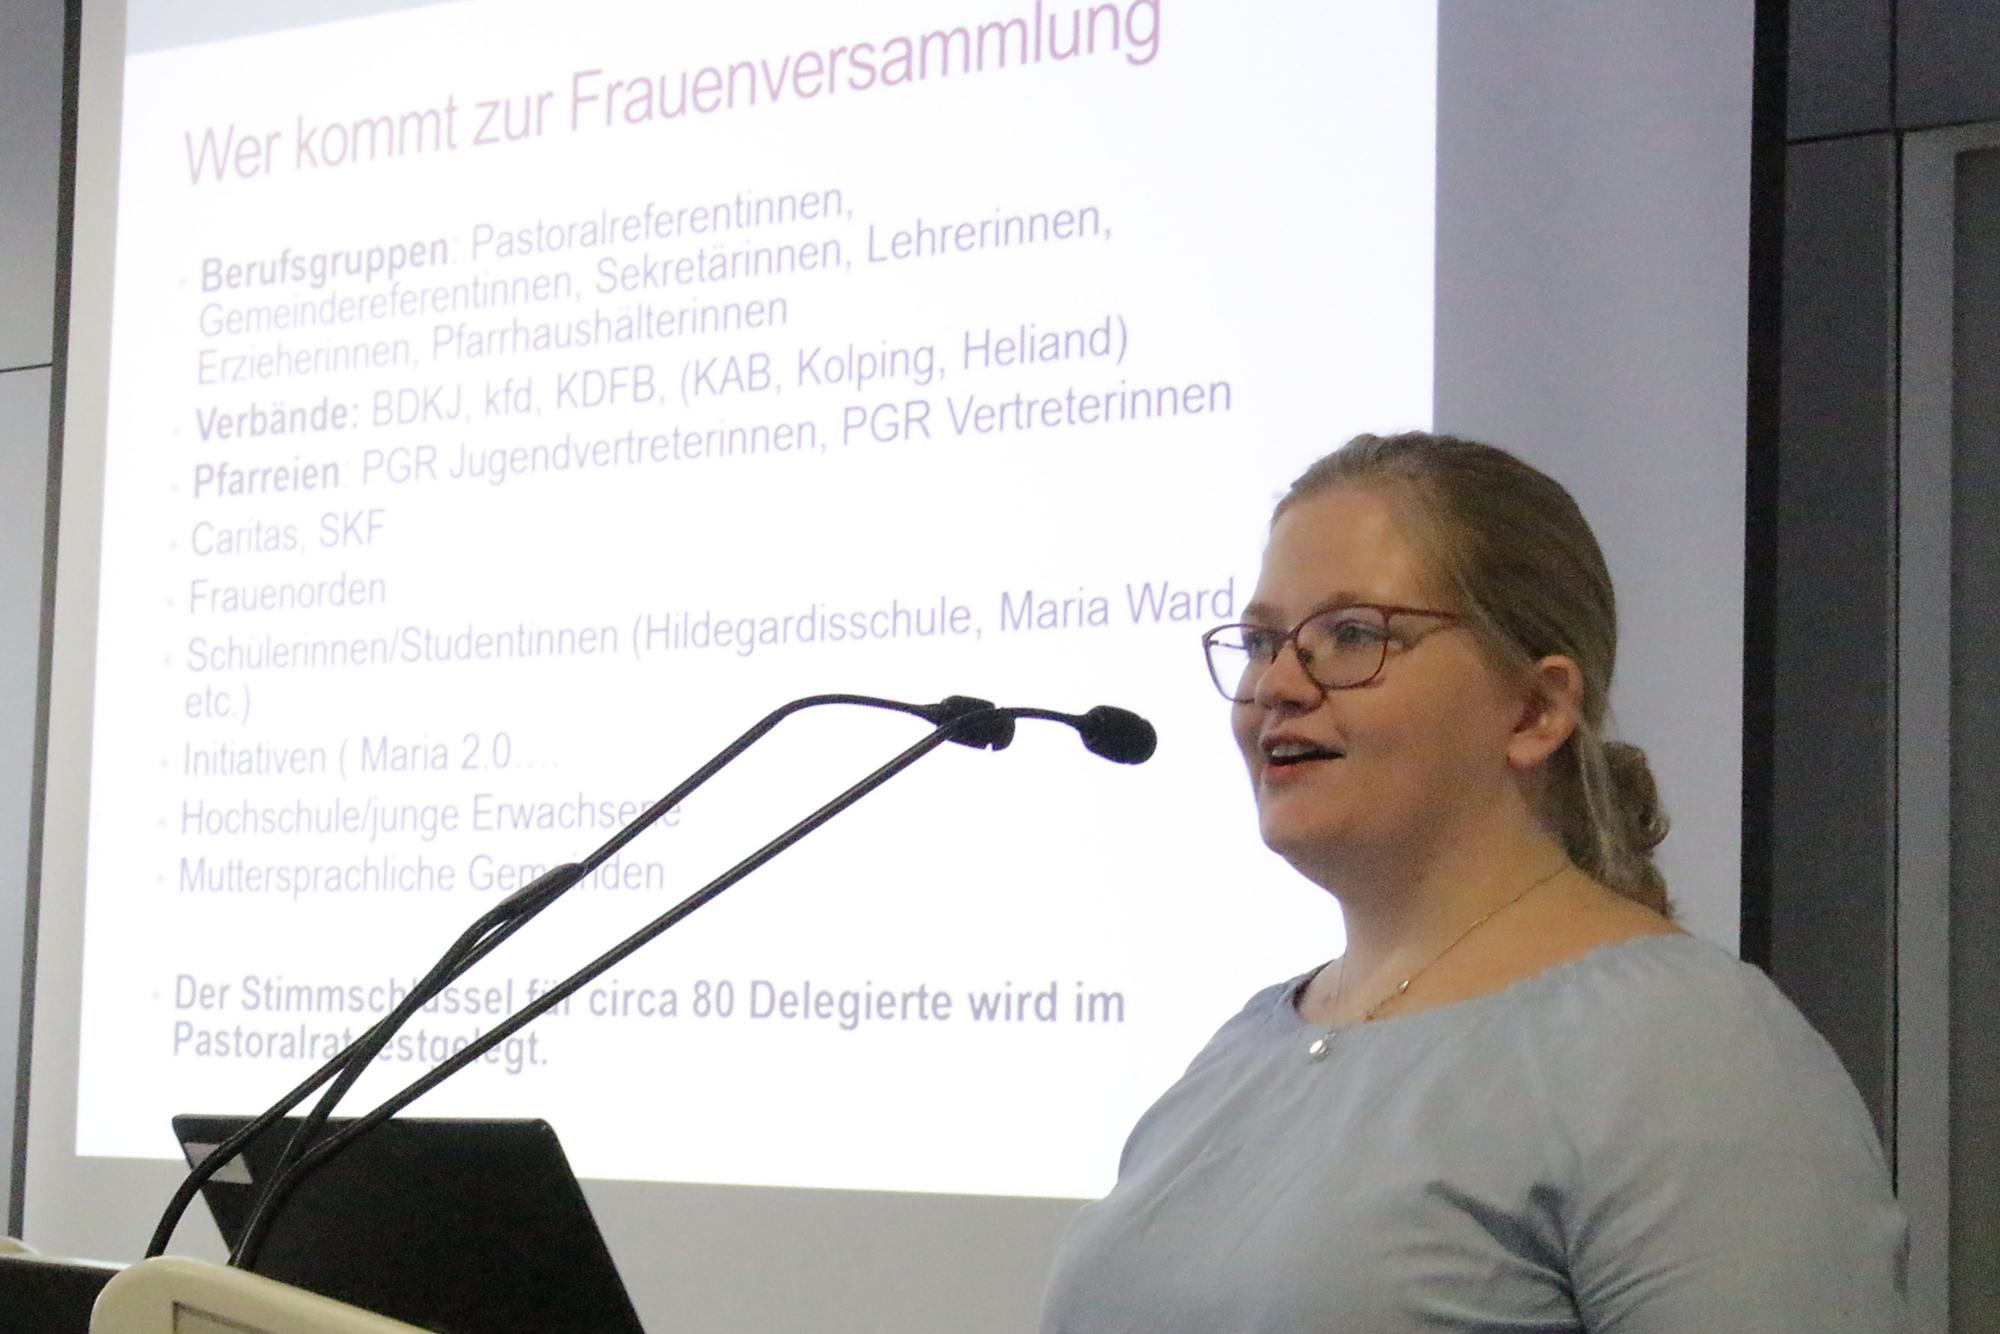 Mainz, 9. November 2019: BDKJ-Diözesanvorsitzende Nadine Wacker stellte einen ersten Entwurf für die Einrichtung einer Frauenkommission im Bistum Mainz vor.